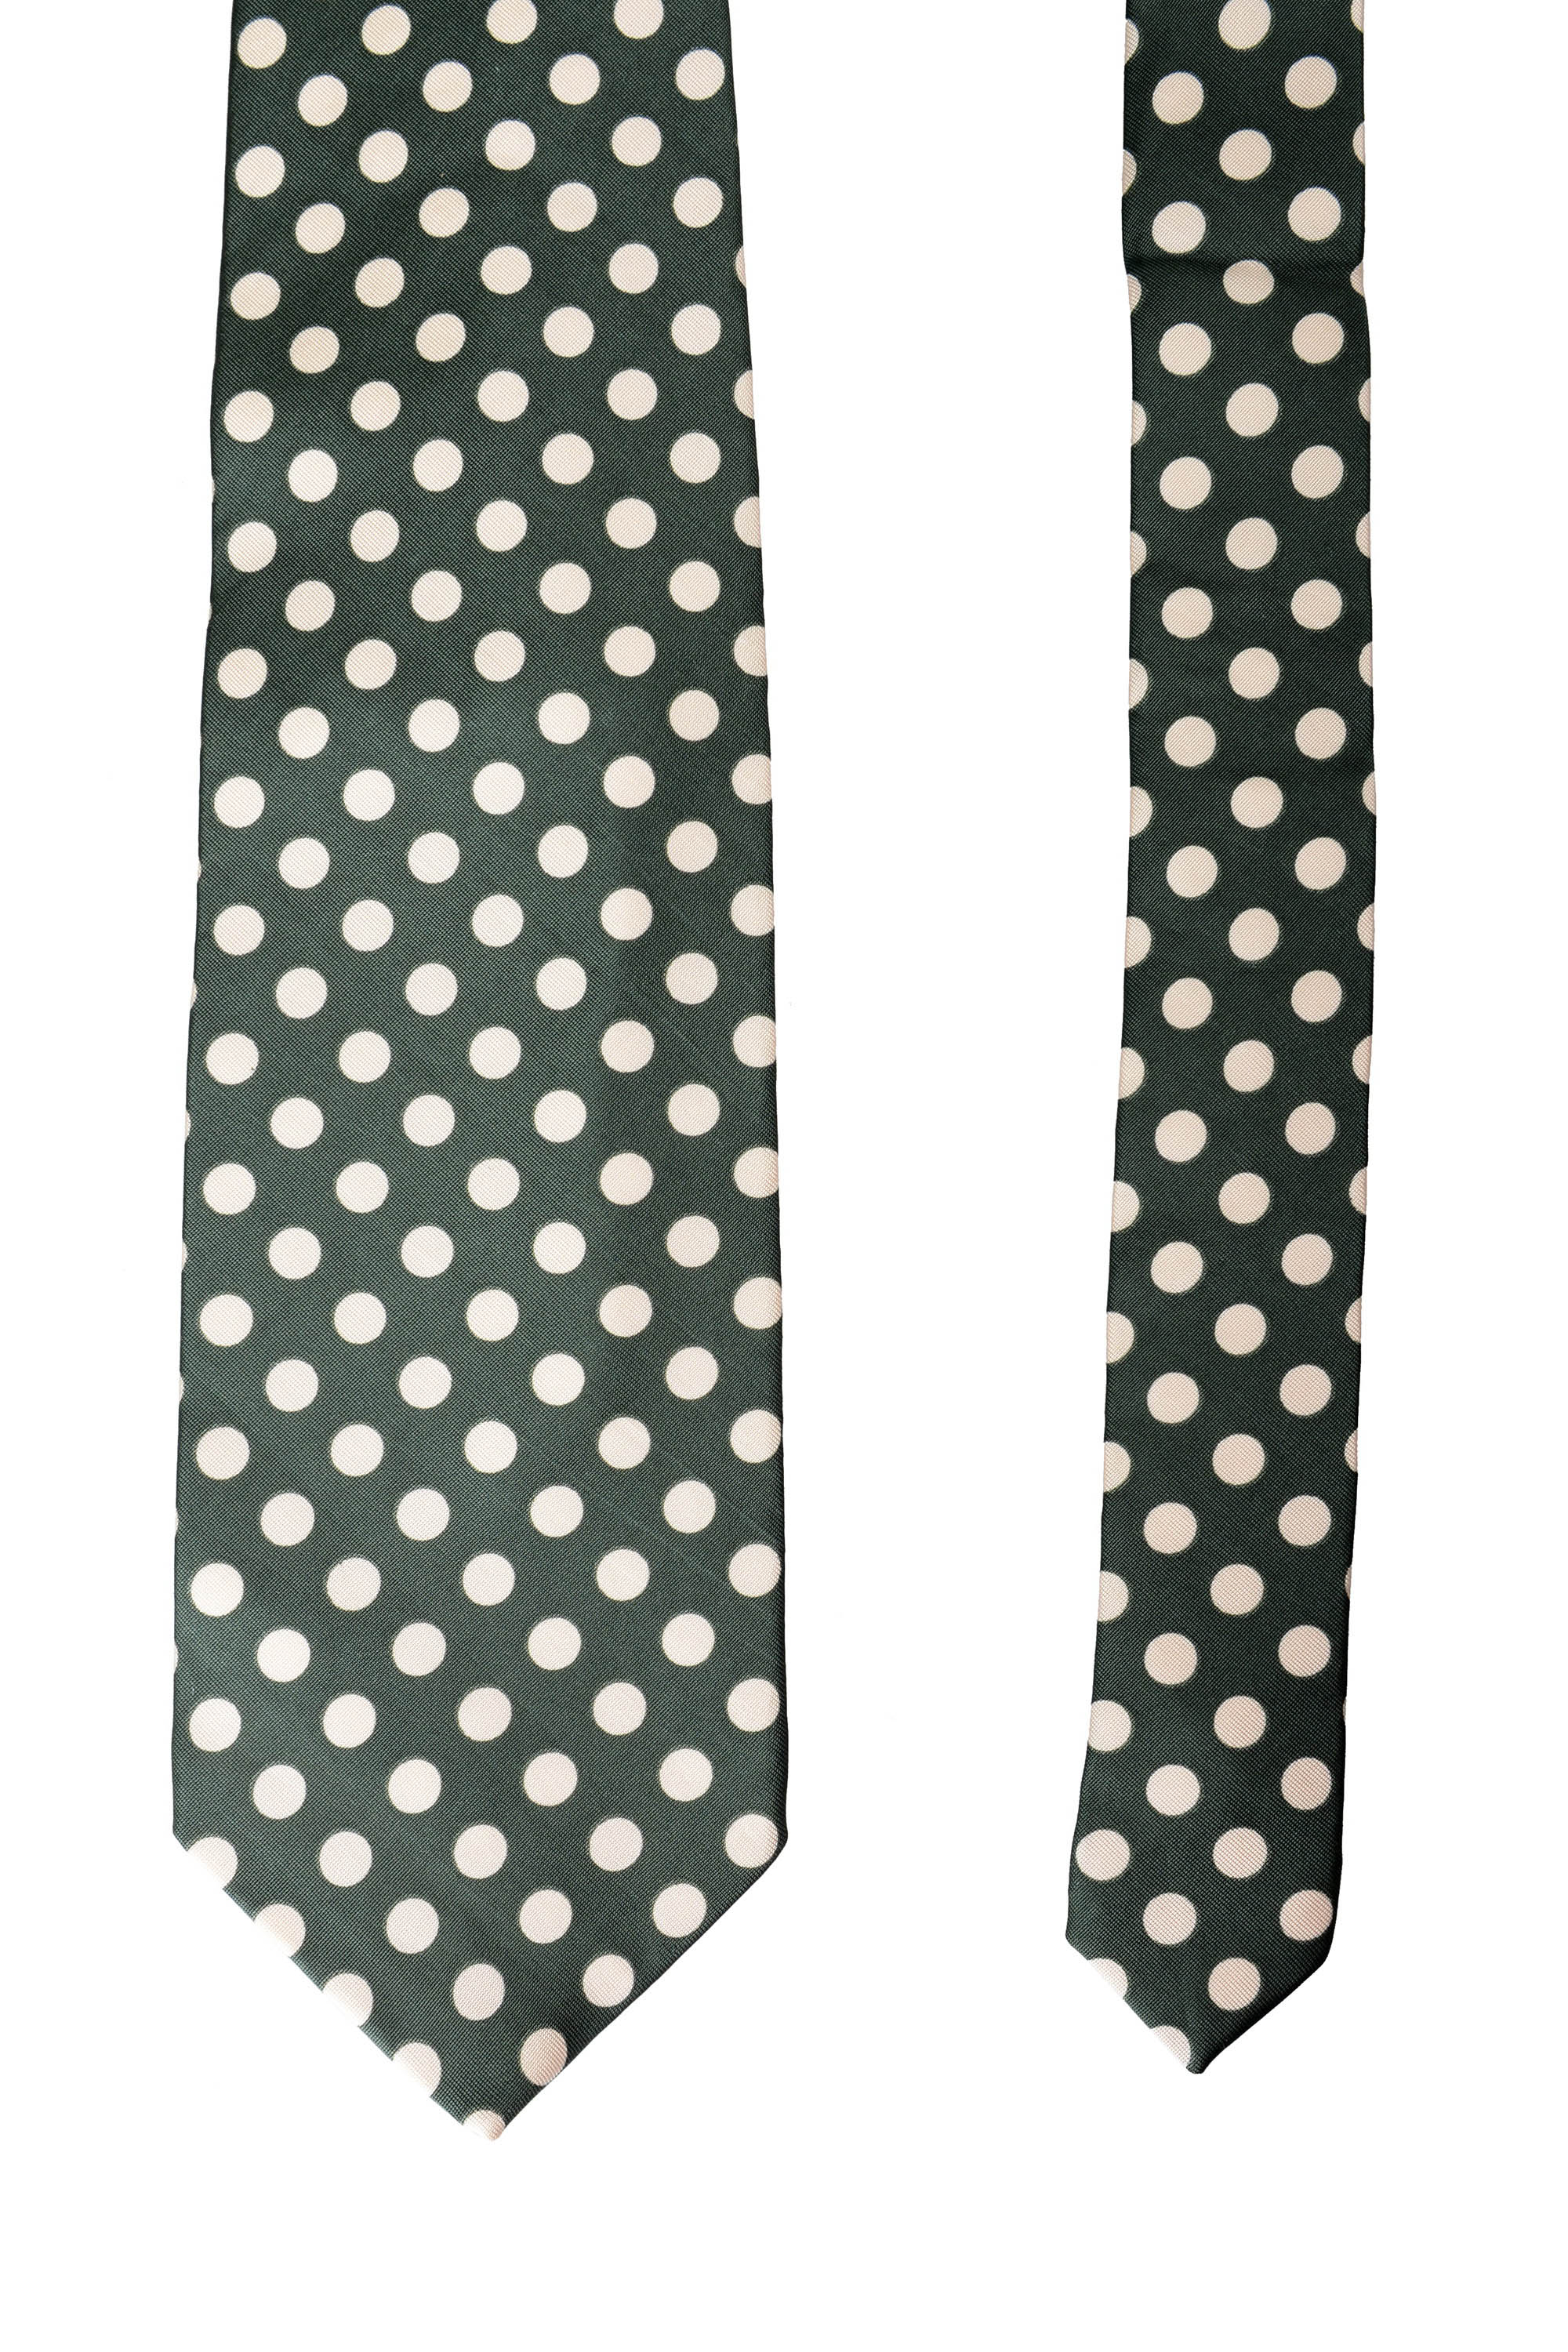 Gianfranco Ferre Men's Polka Dot Multi-Color Neck Tie